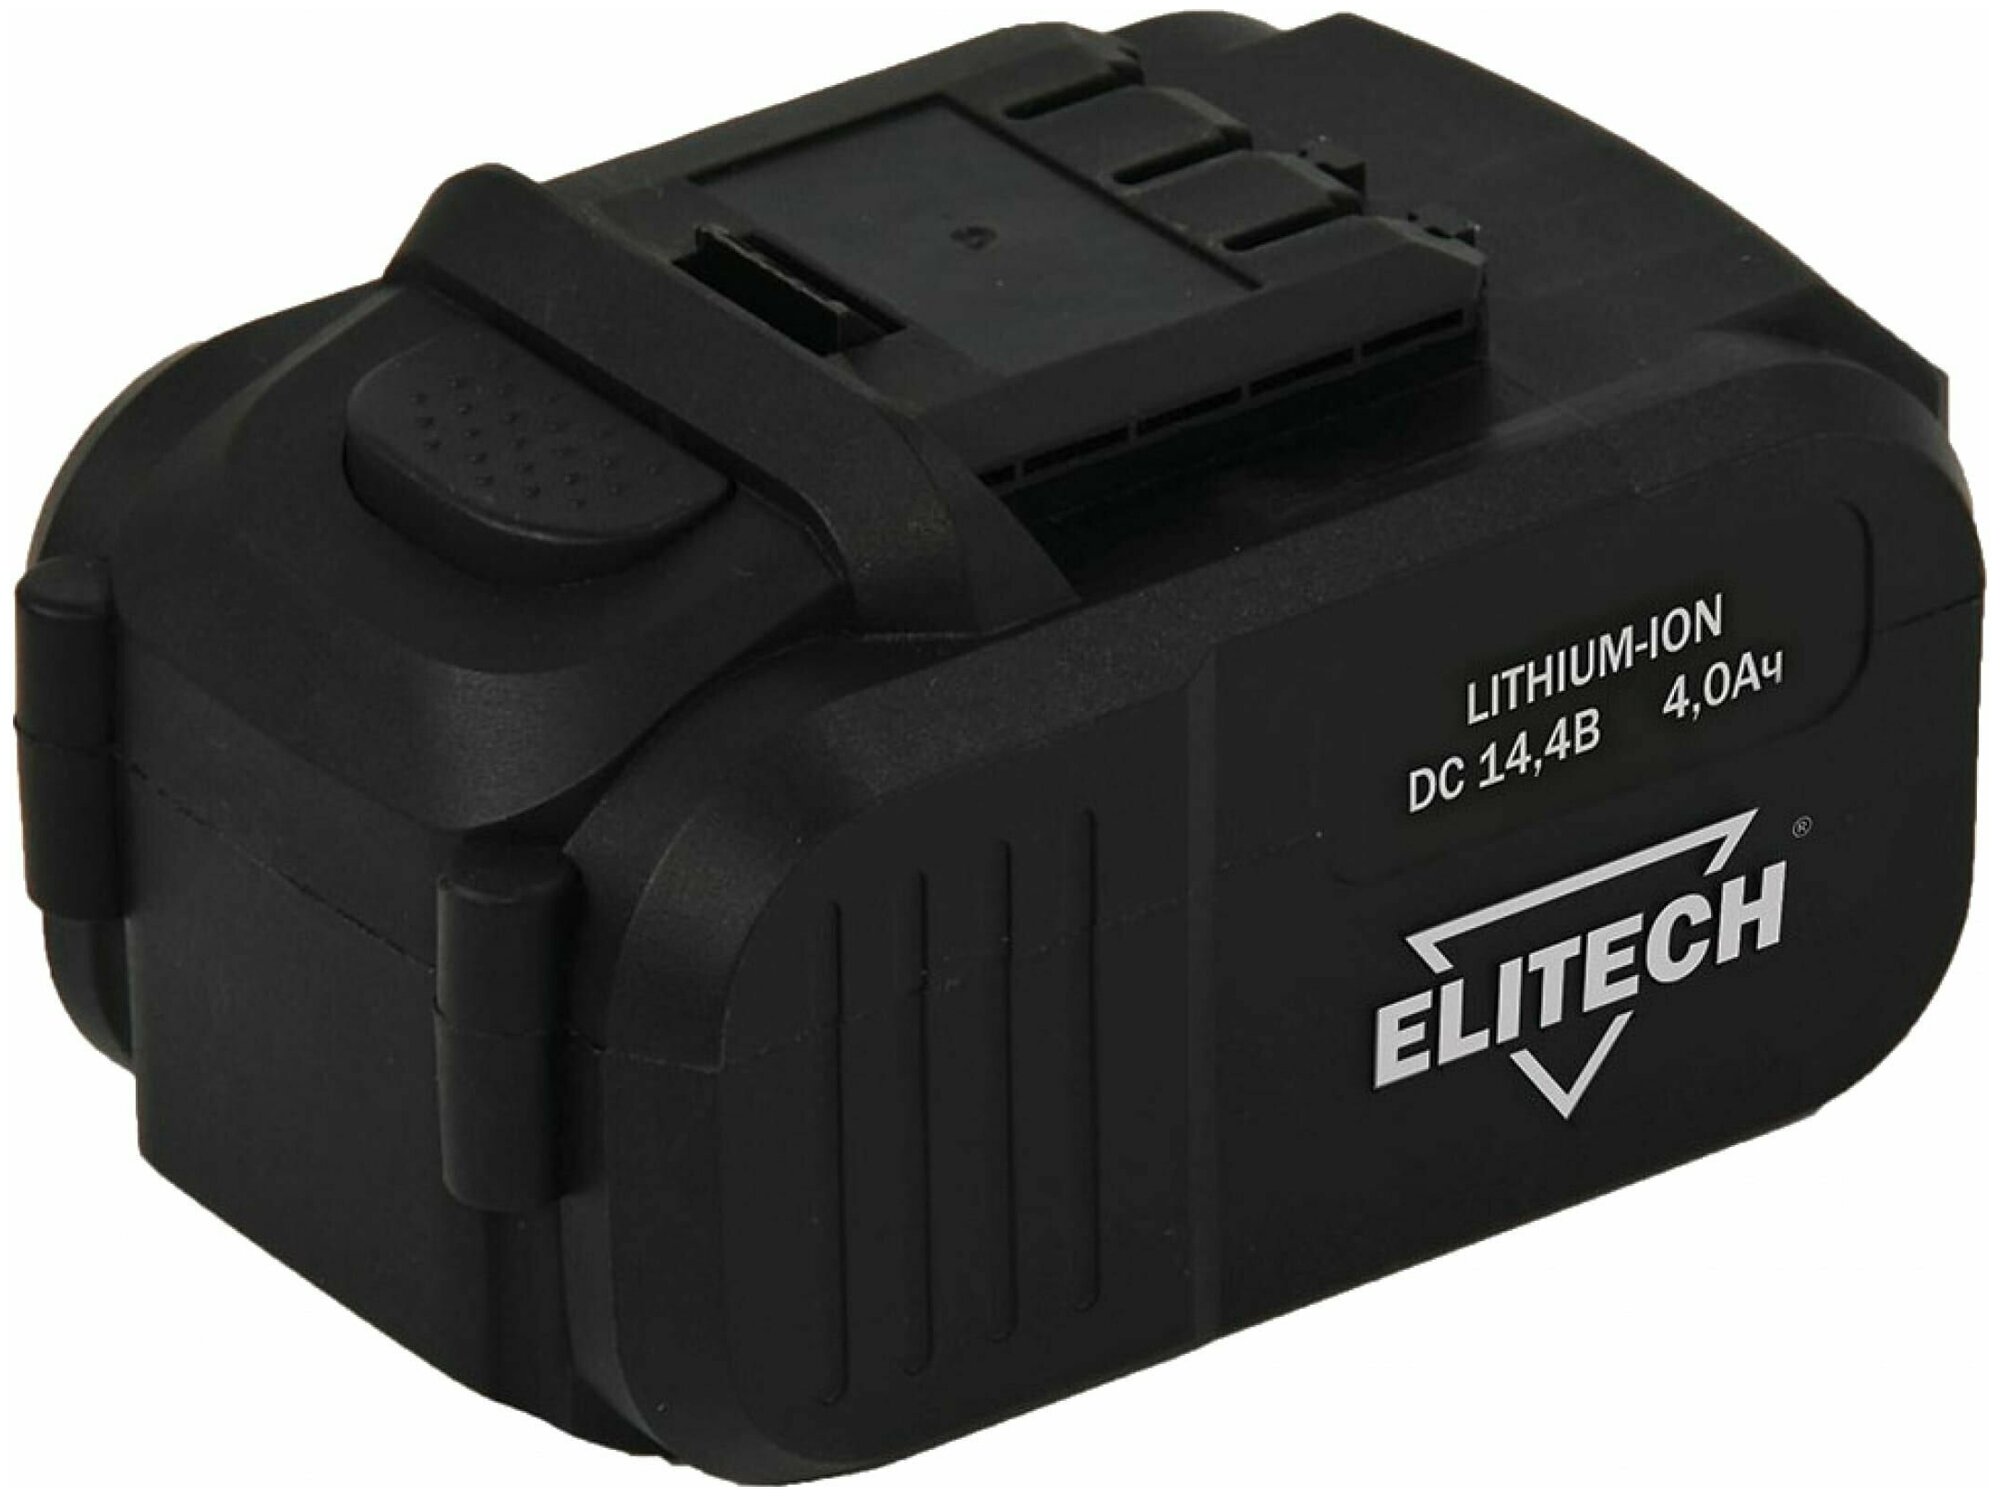 Аккумулятор (14.4 В; 4 А*ч; Li-Ion) Elitech 1820.067500 электроинструмент, подарок на день рождения мужчине, любимому, папе, дедушке, парню